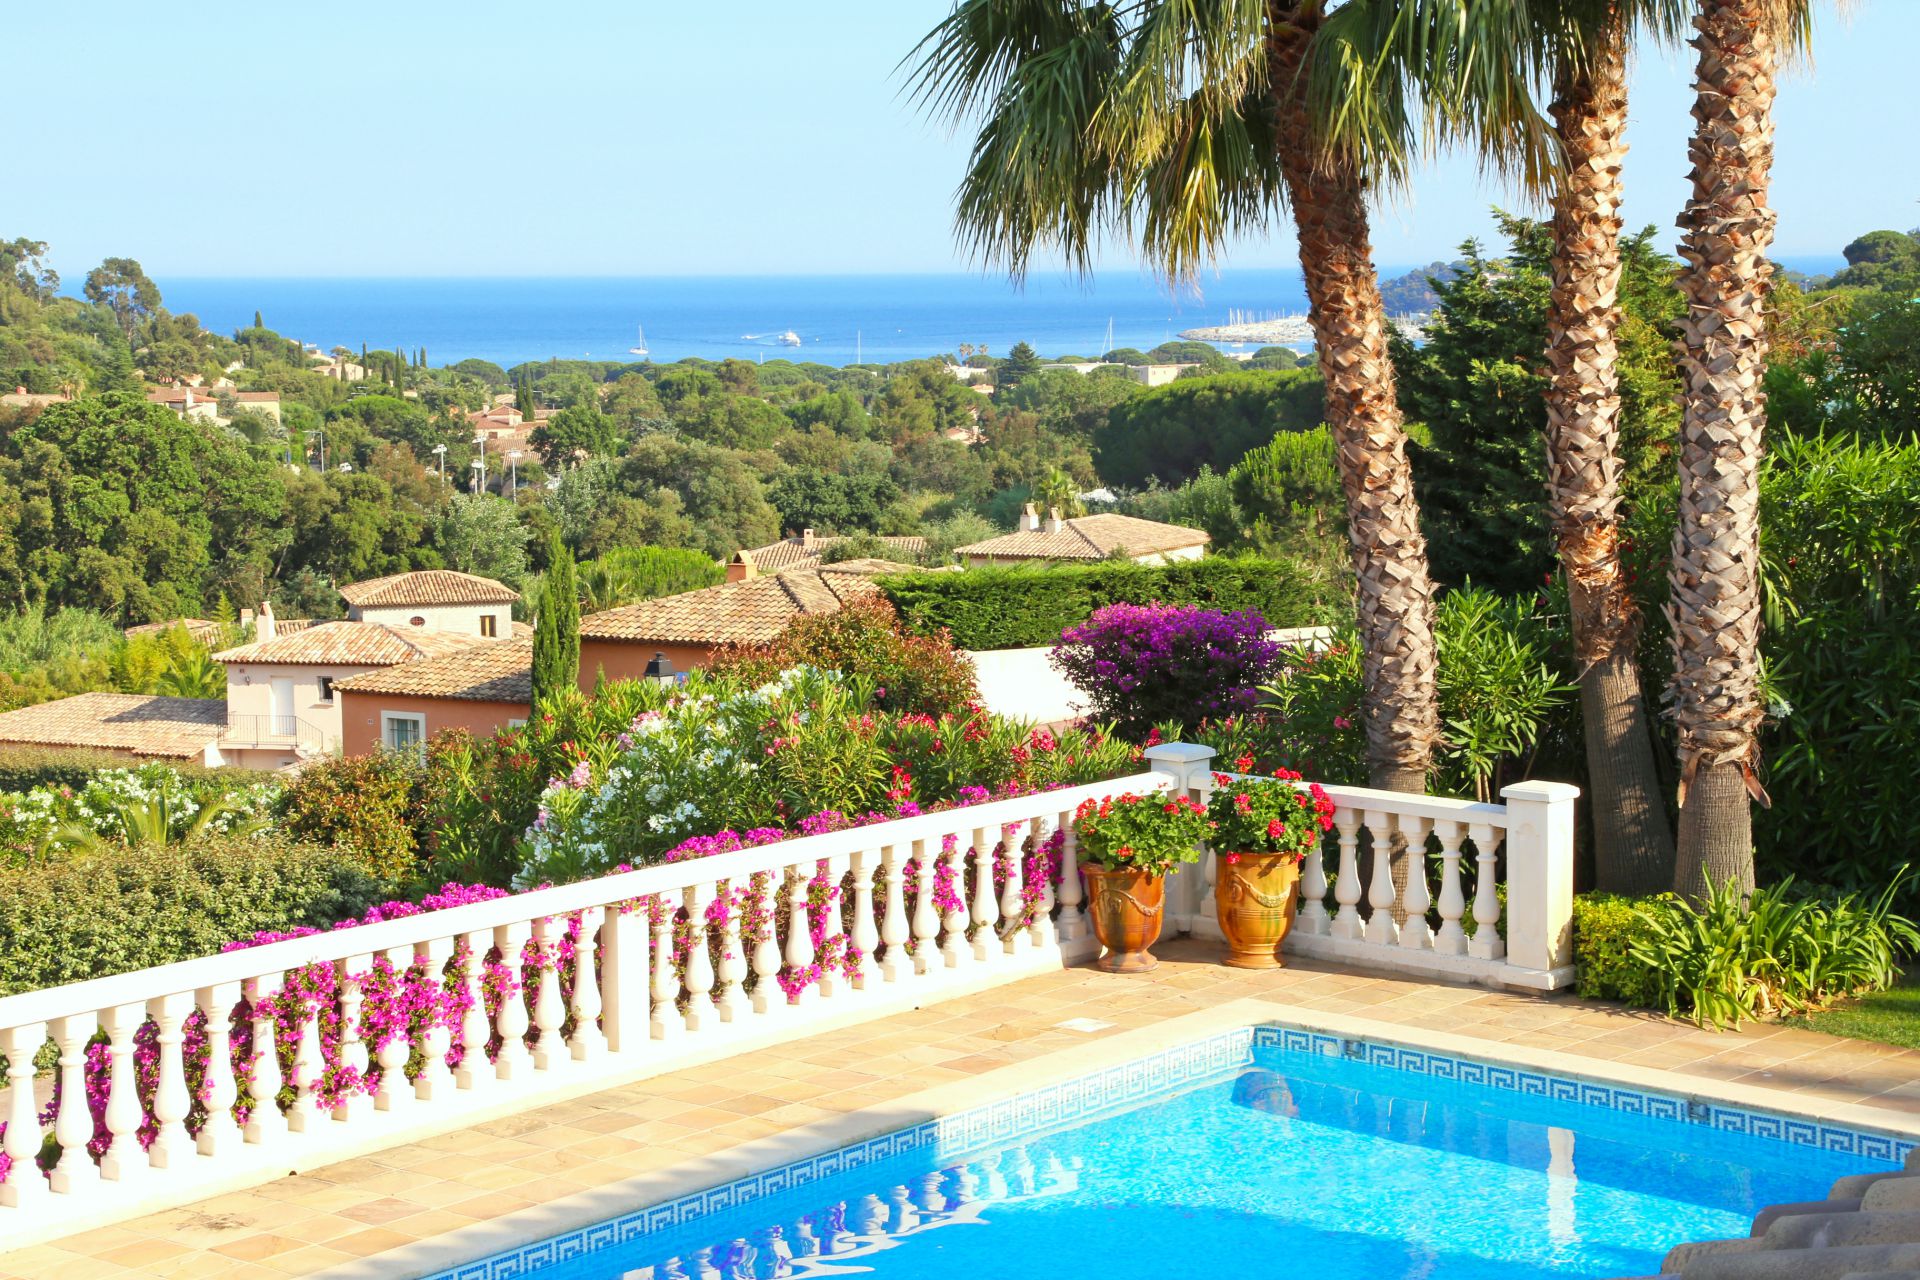 Méditerranée Location Villa with Private pool in Cavalaire sur Mer, Côte d'Azur